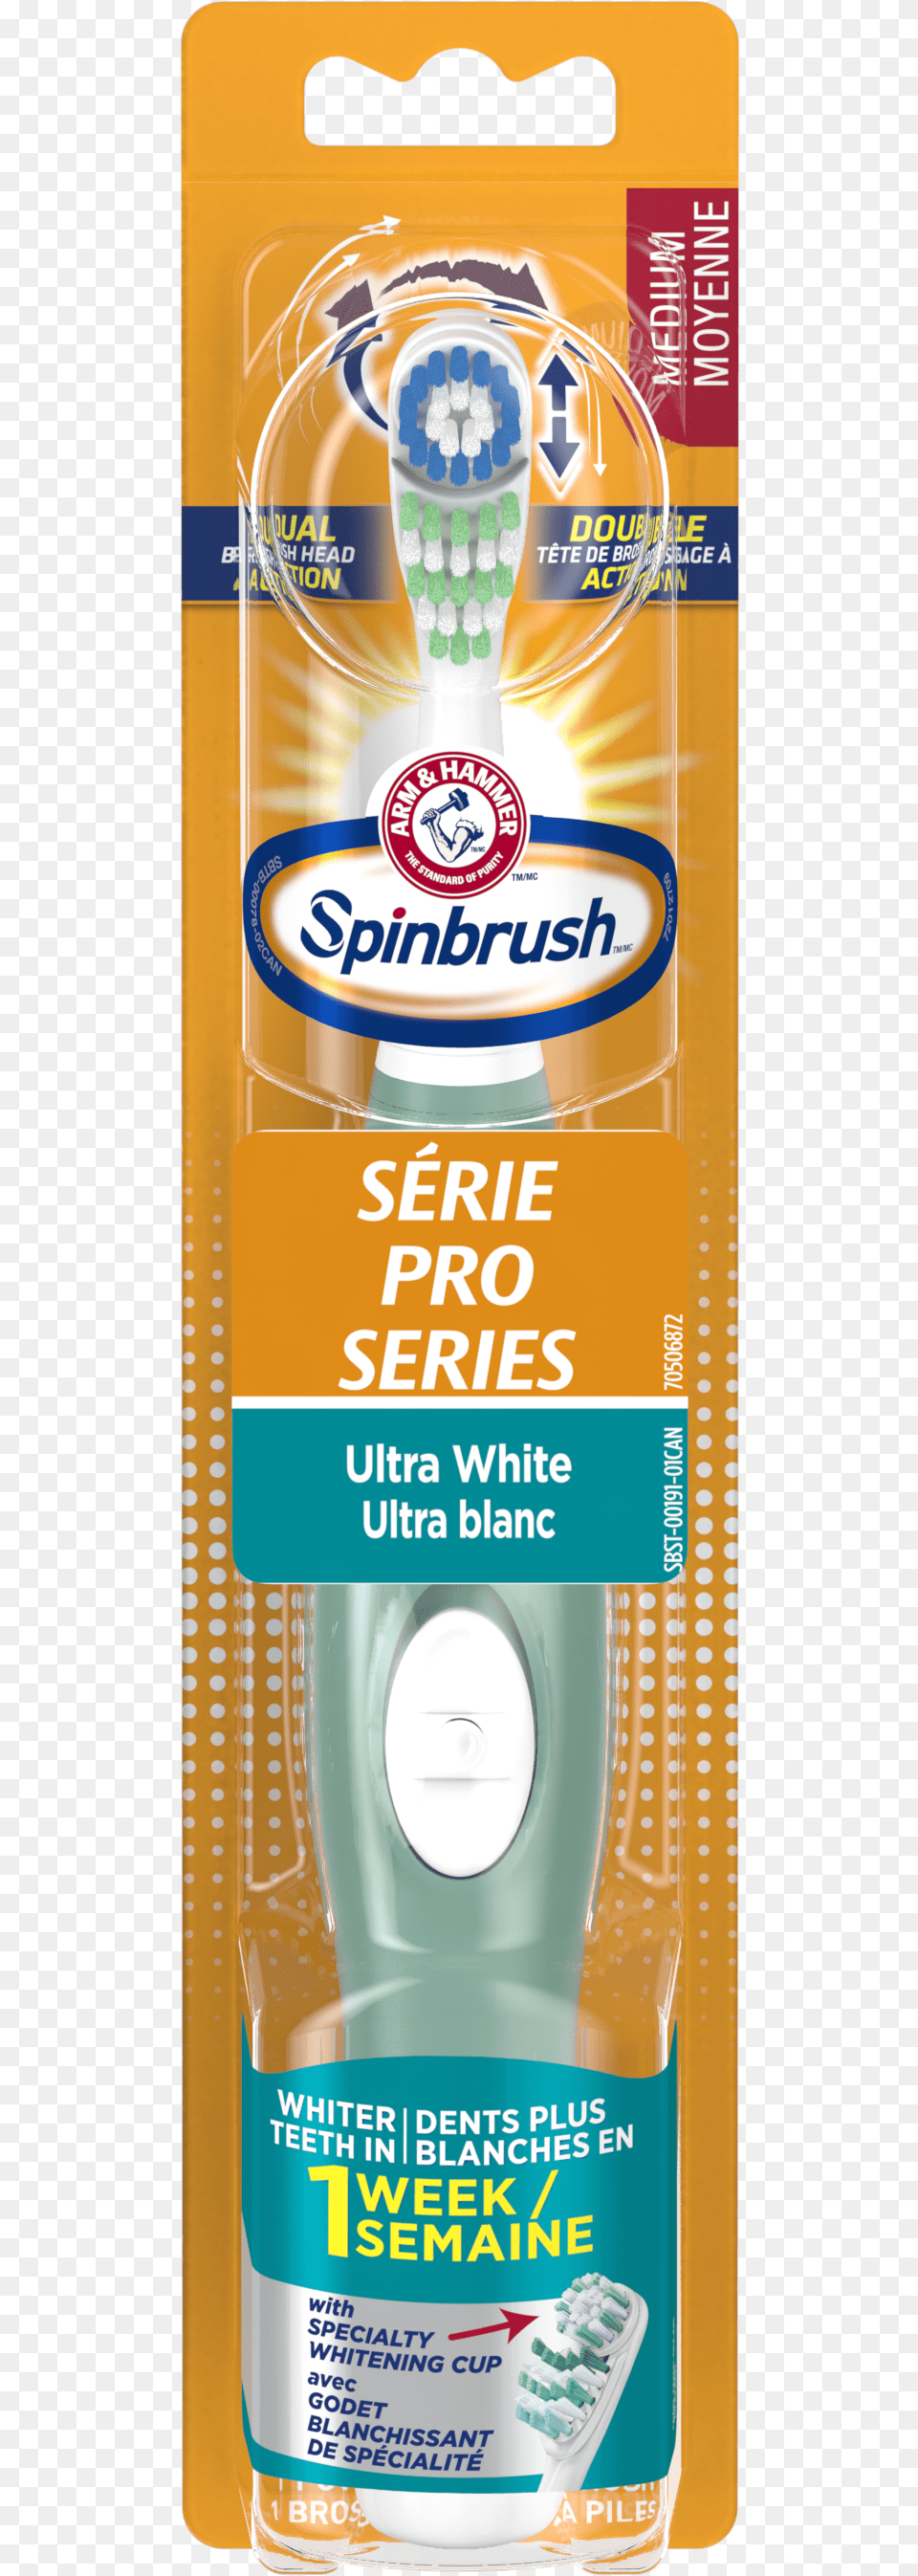 Spinbrush Pro Series Ultra White, Brush, Device, Tool, Toothbrush Free Png Download